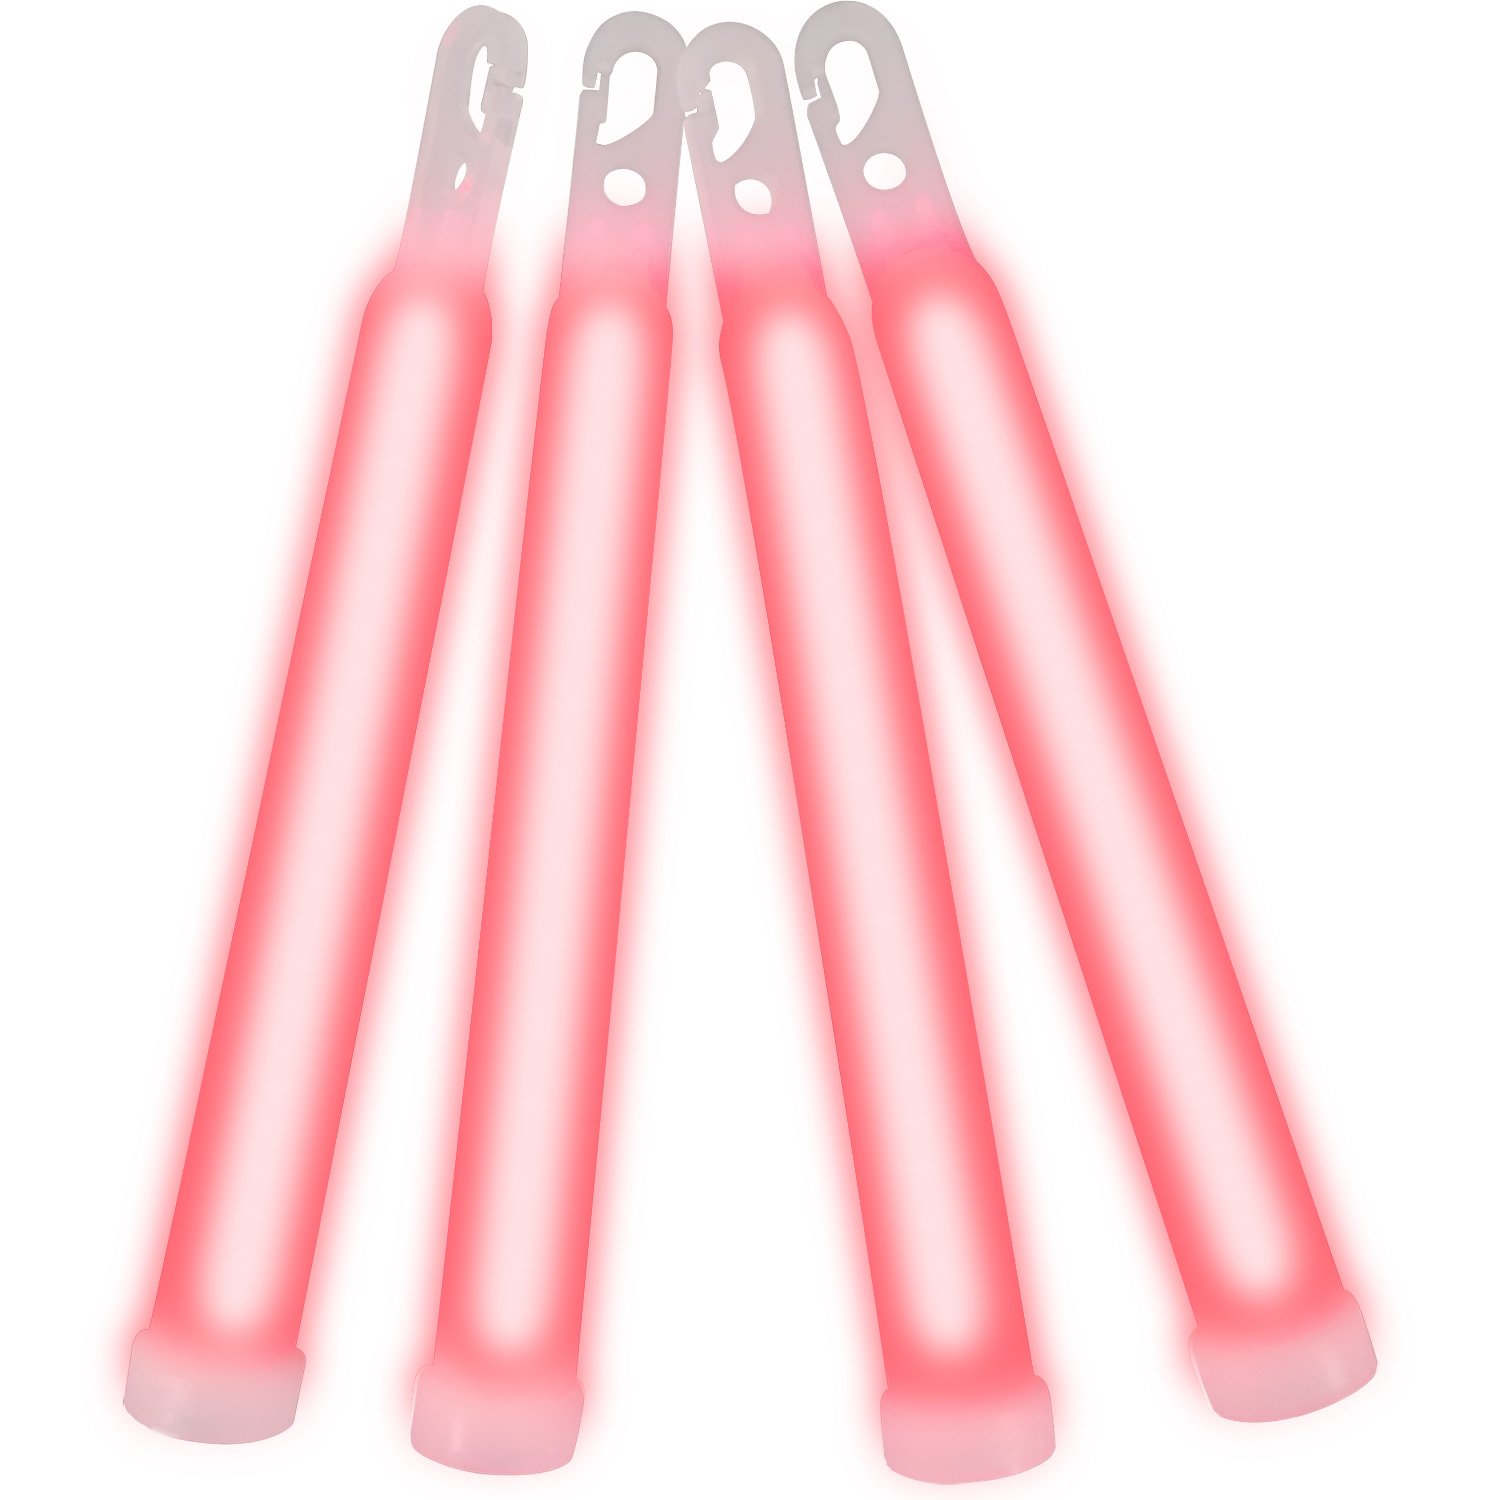 6 Inch Glow Sticks Red 6 Inch Glow Sticks 3